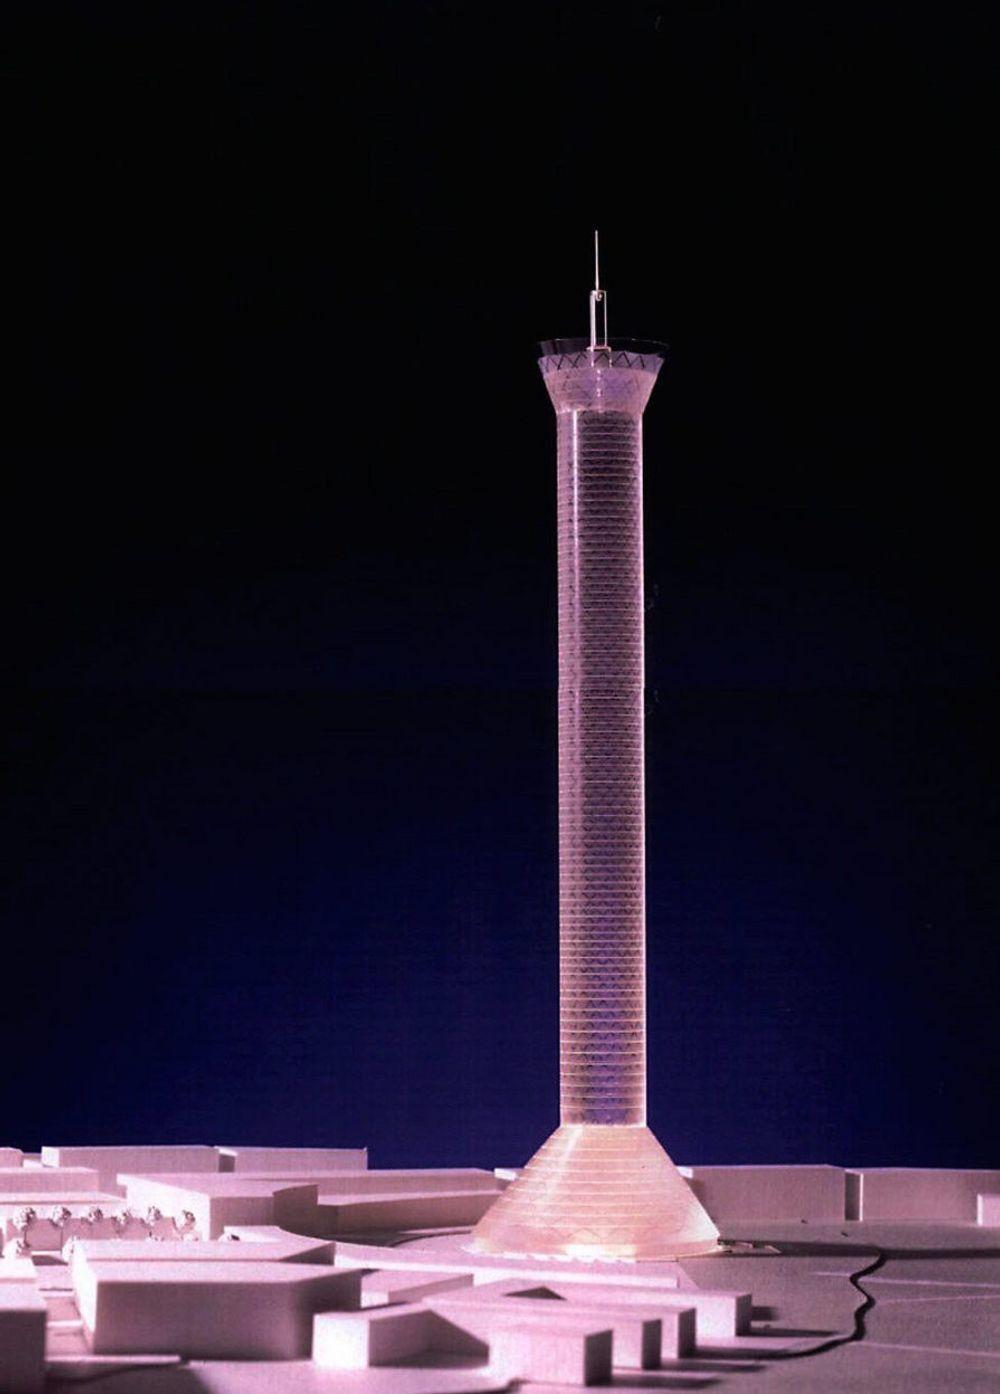 Arthur Buchardt har historie for ambisiøse høyhusprosjekter. Her er en prosjektmodell av det som skulle bli Scandinavian Tower i Malmö. Hvis realisert, ville bygget vært Europas høyeste med sine 274 meter (325 meter med mast). Planene ble skrinlagt i 2004.